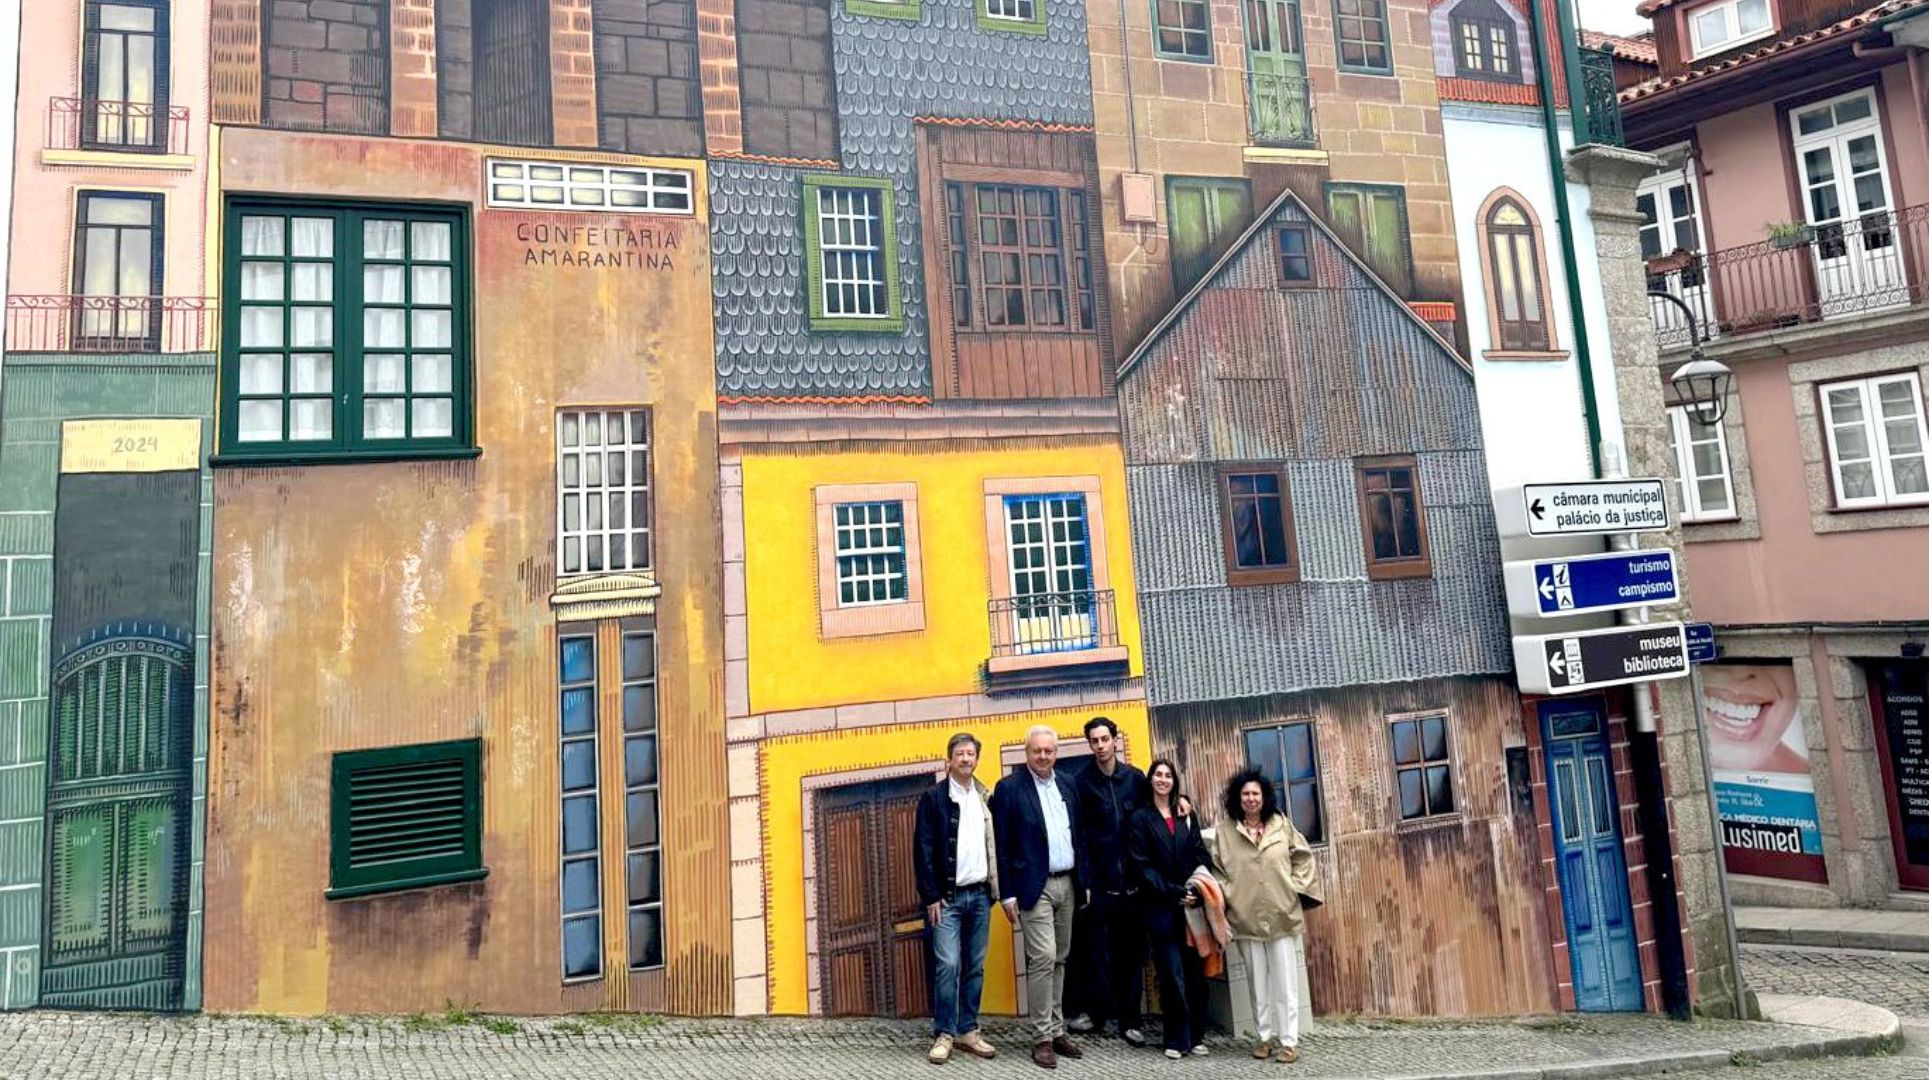 Mural de Arte Urbana conquista amarantinos e turistas